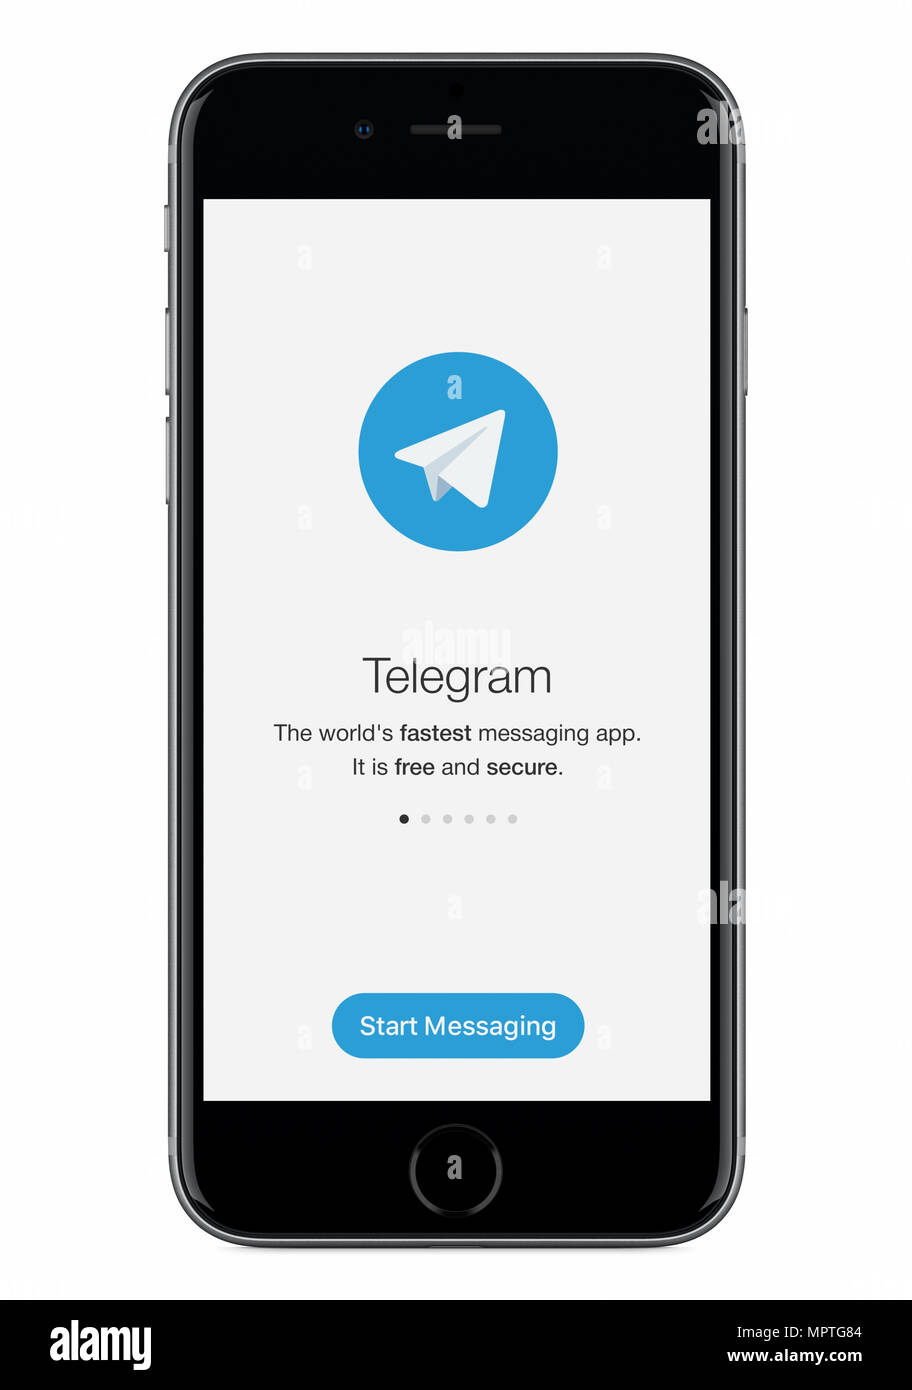 Pantalla de inicio de messenger telegrama telegrama con logotipo en negro Apple iPhone 8 pantalla. Foto de stock